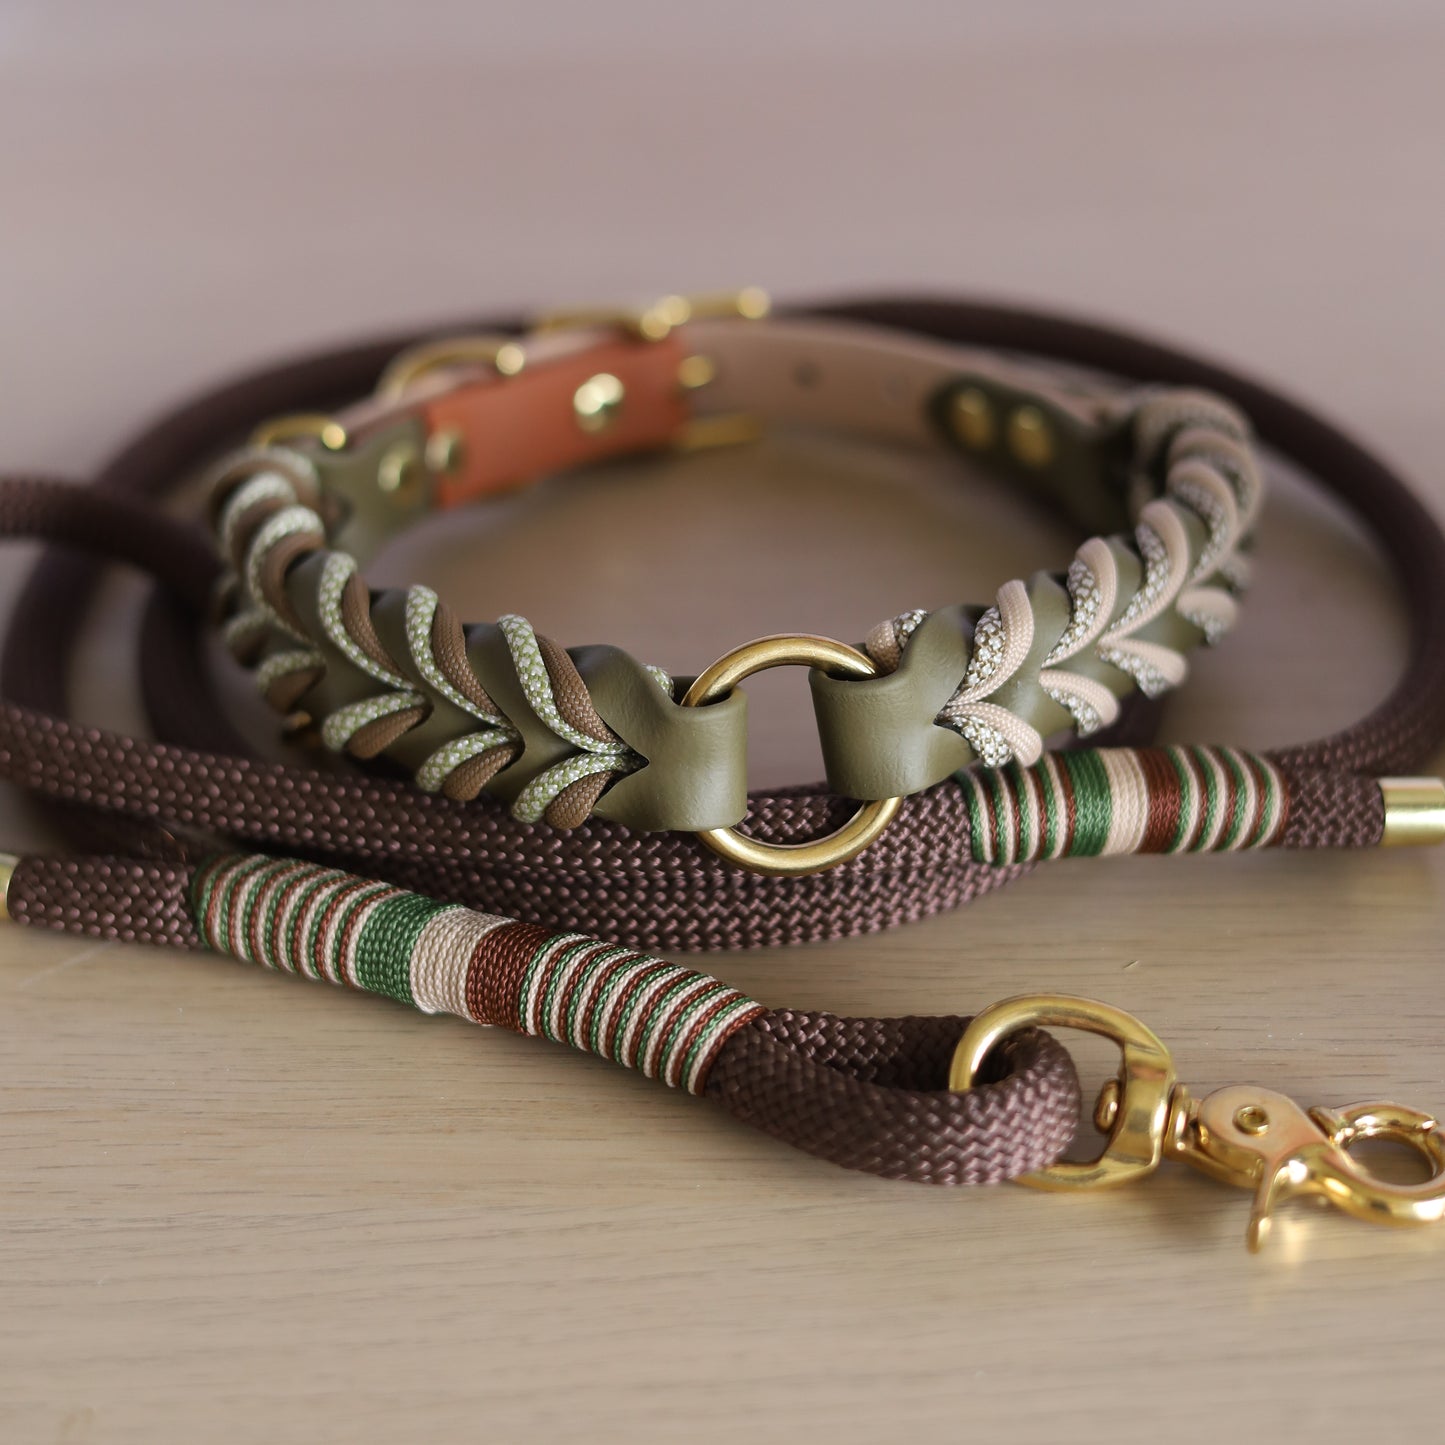 Safari braided collar with O ring